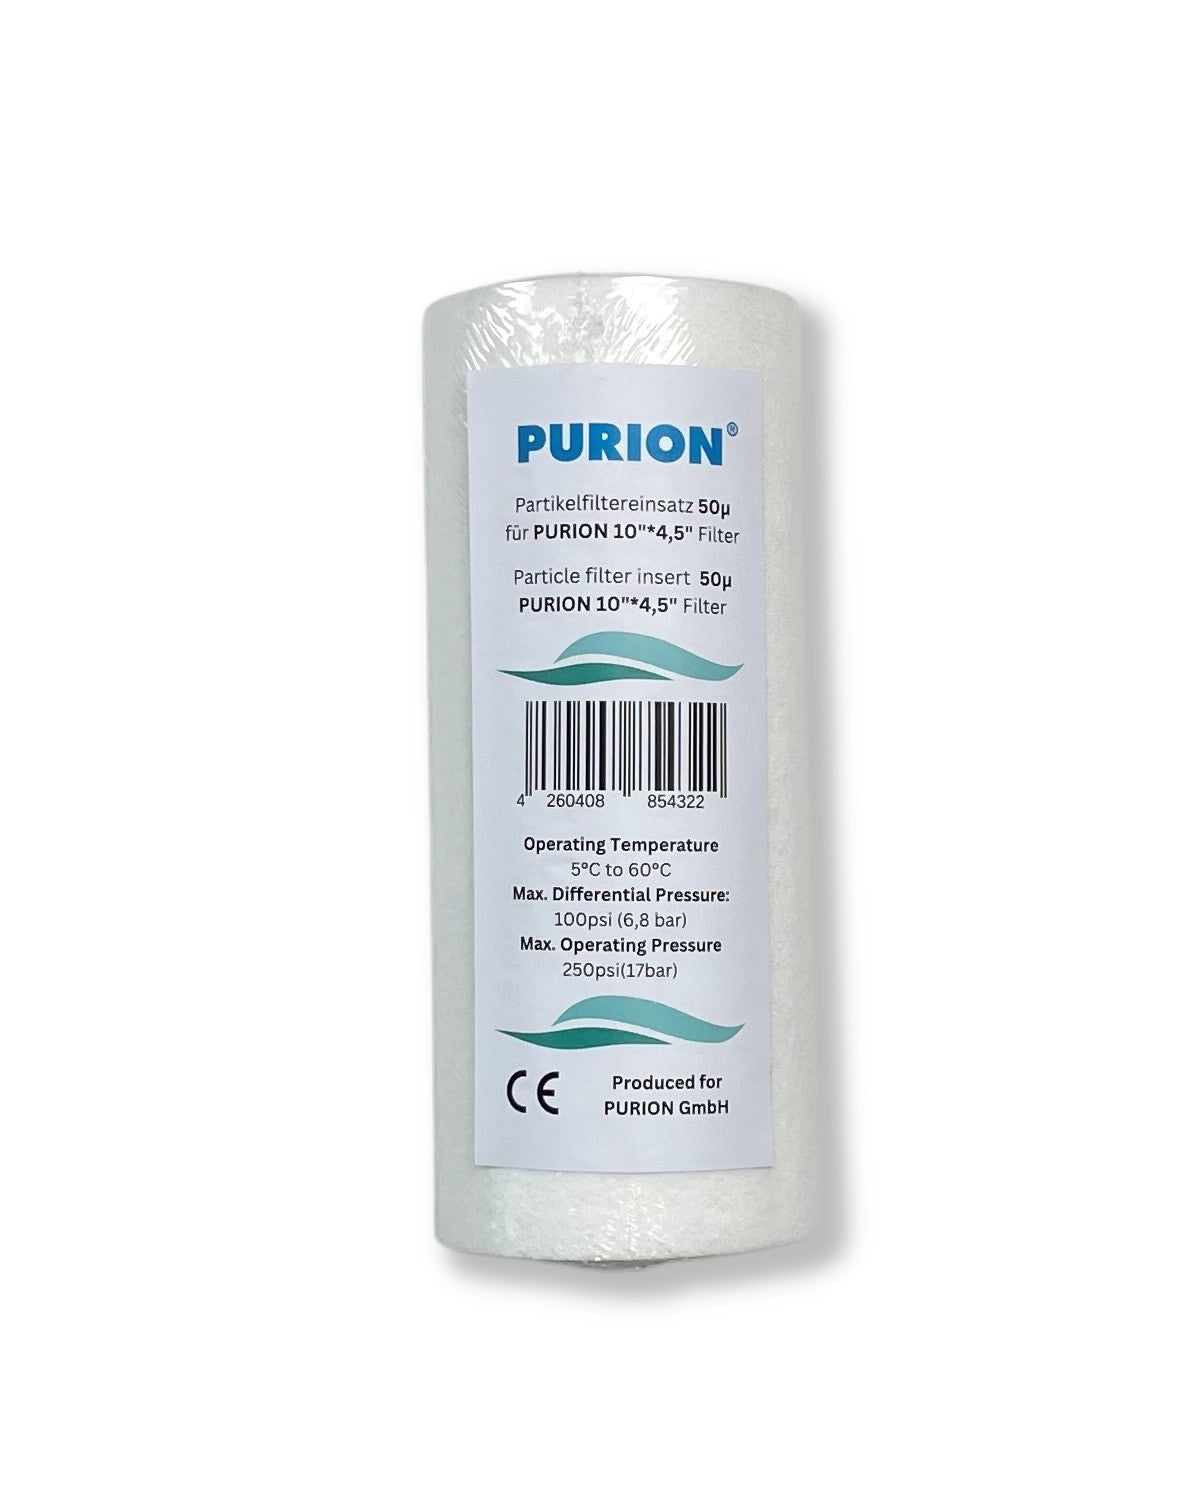 Purion-Hygienetücher sind eine erstklassige Marke, die die höchsten Qualitätsstandards für die Wasserdesinfektion PURION 2500 90 W Starter erfüllt.